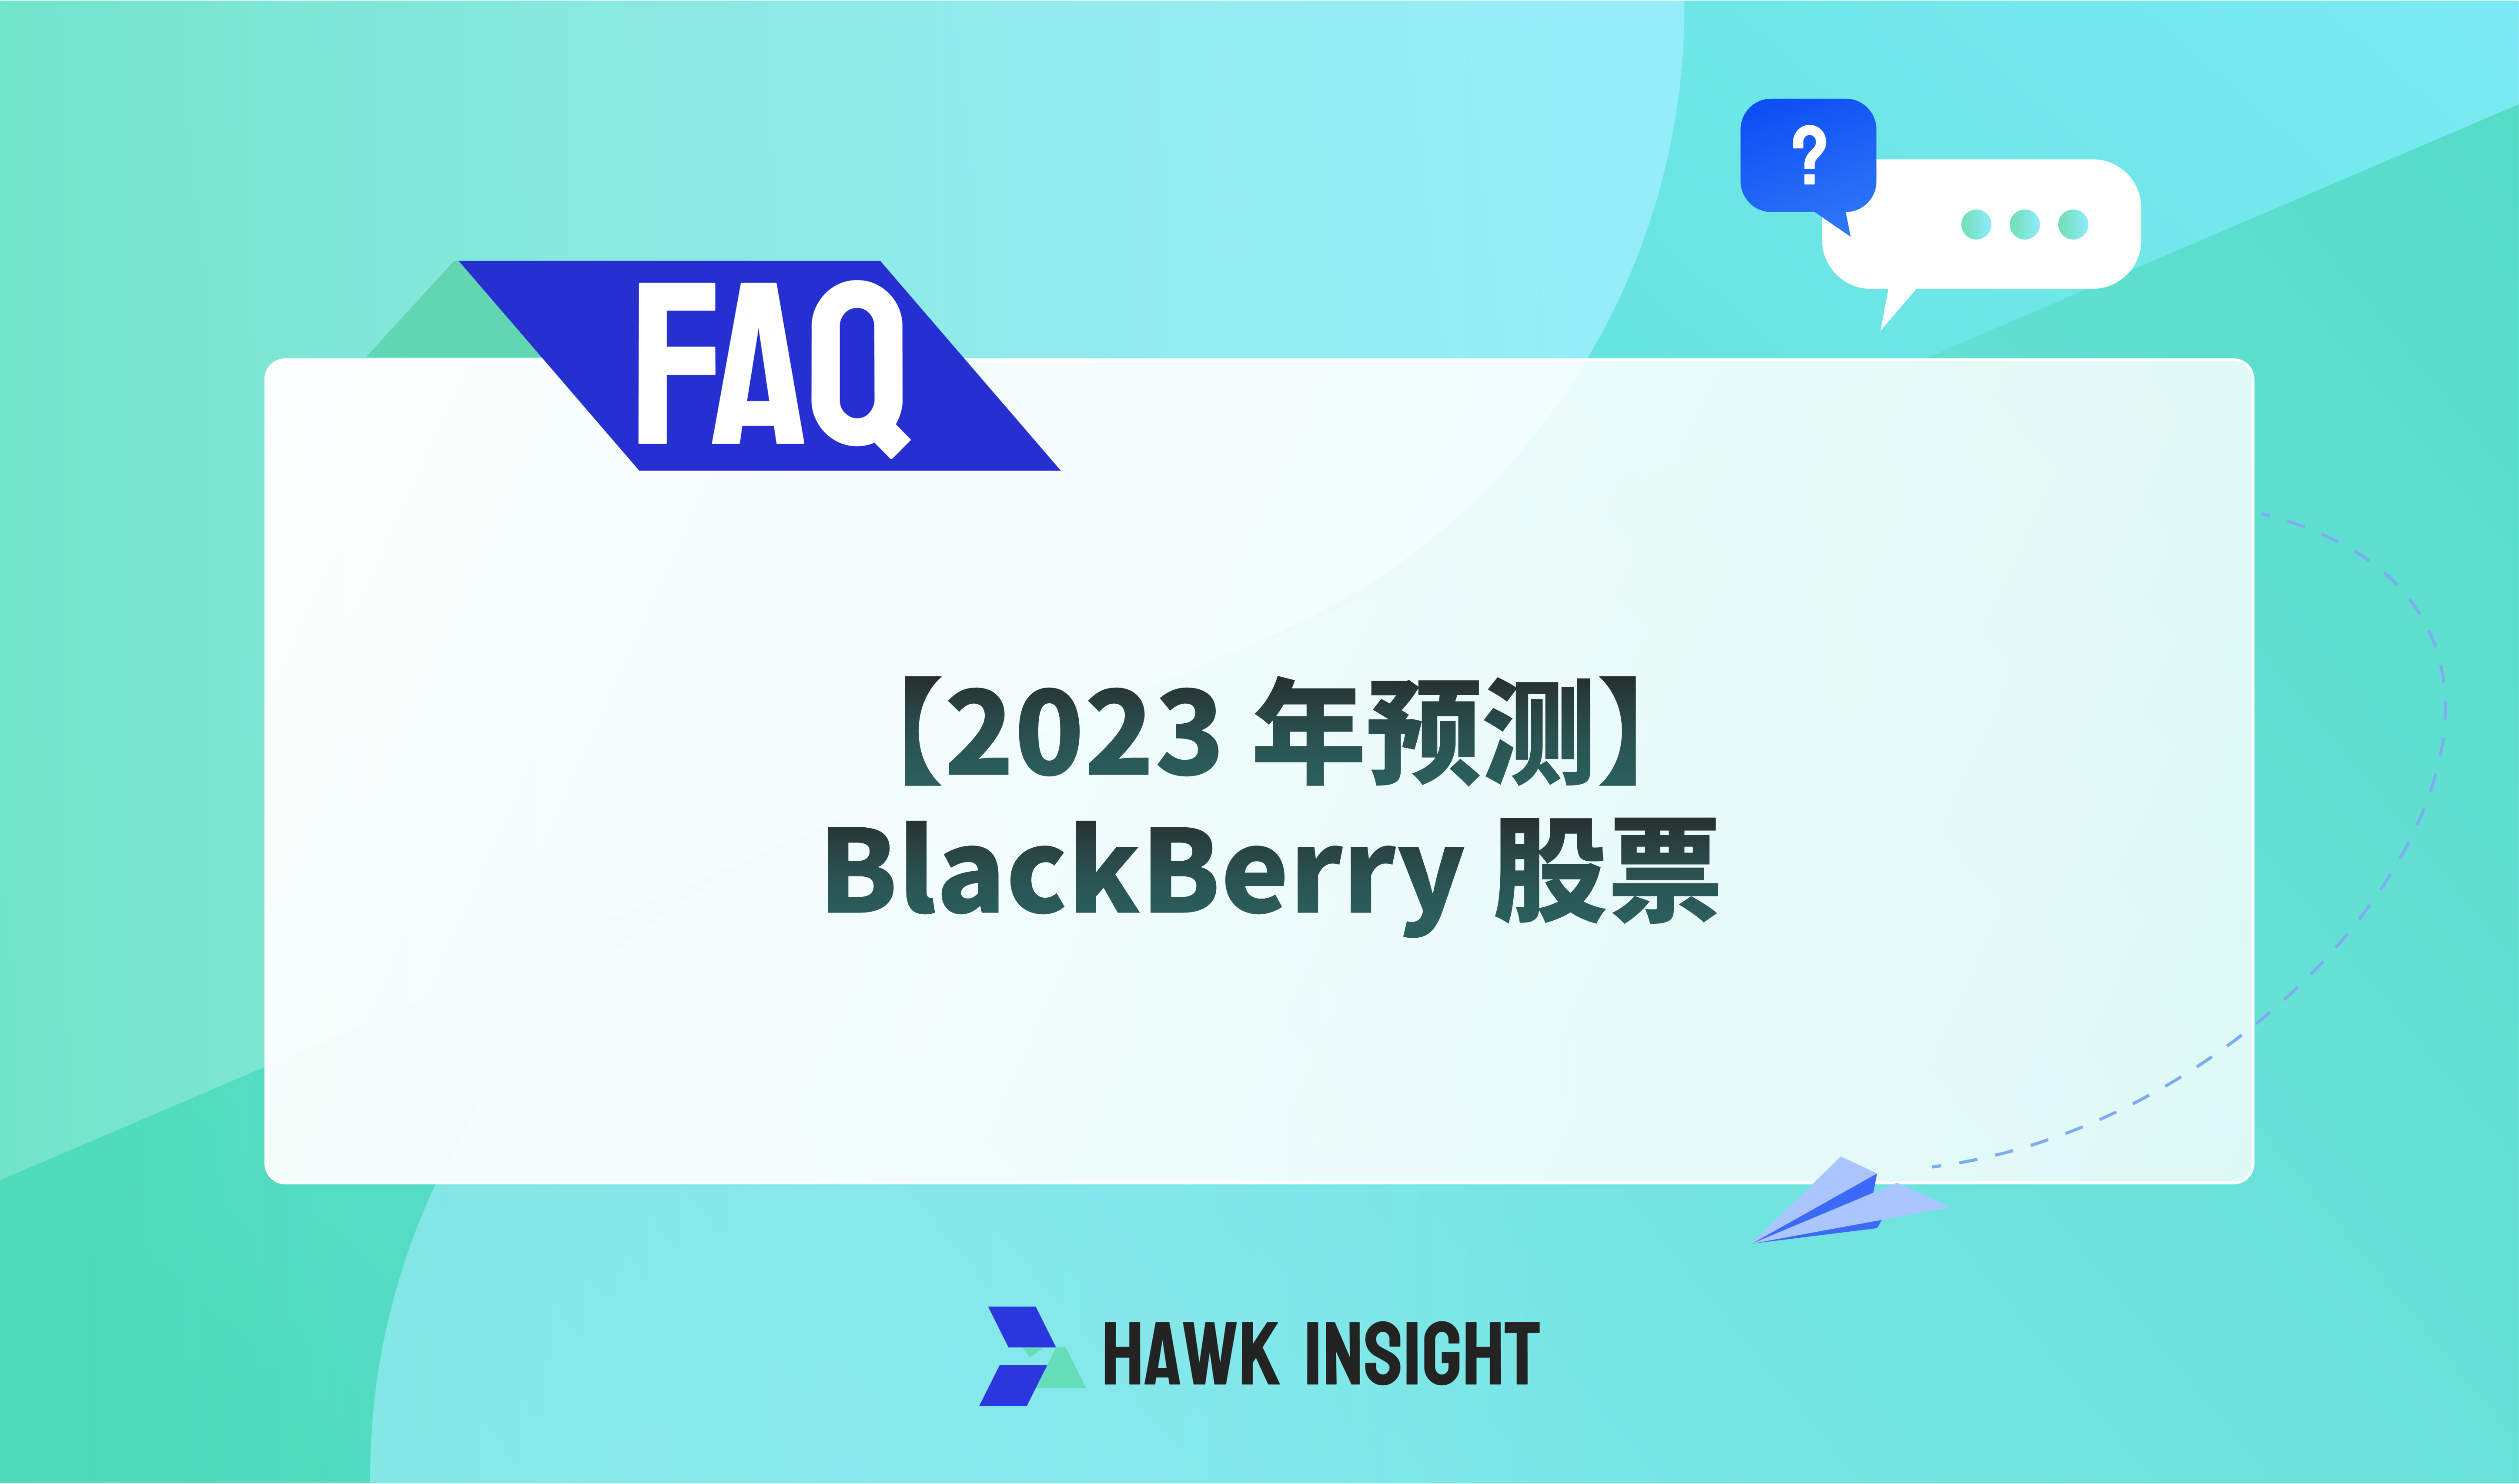 【2023 年预测】BlackBerry 股票